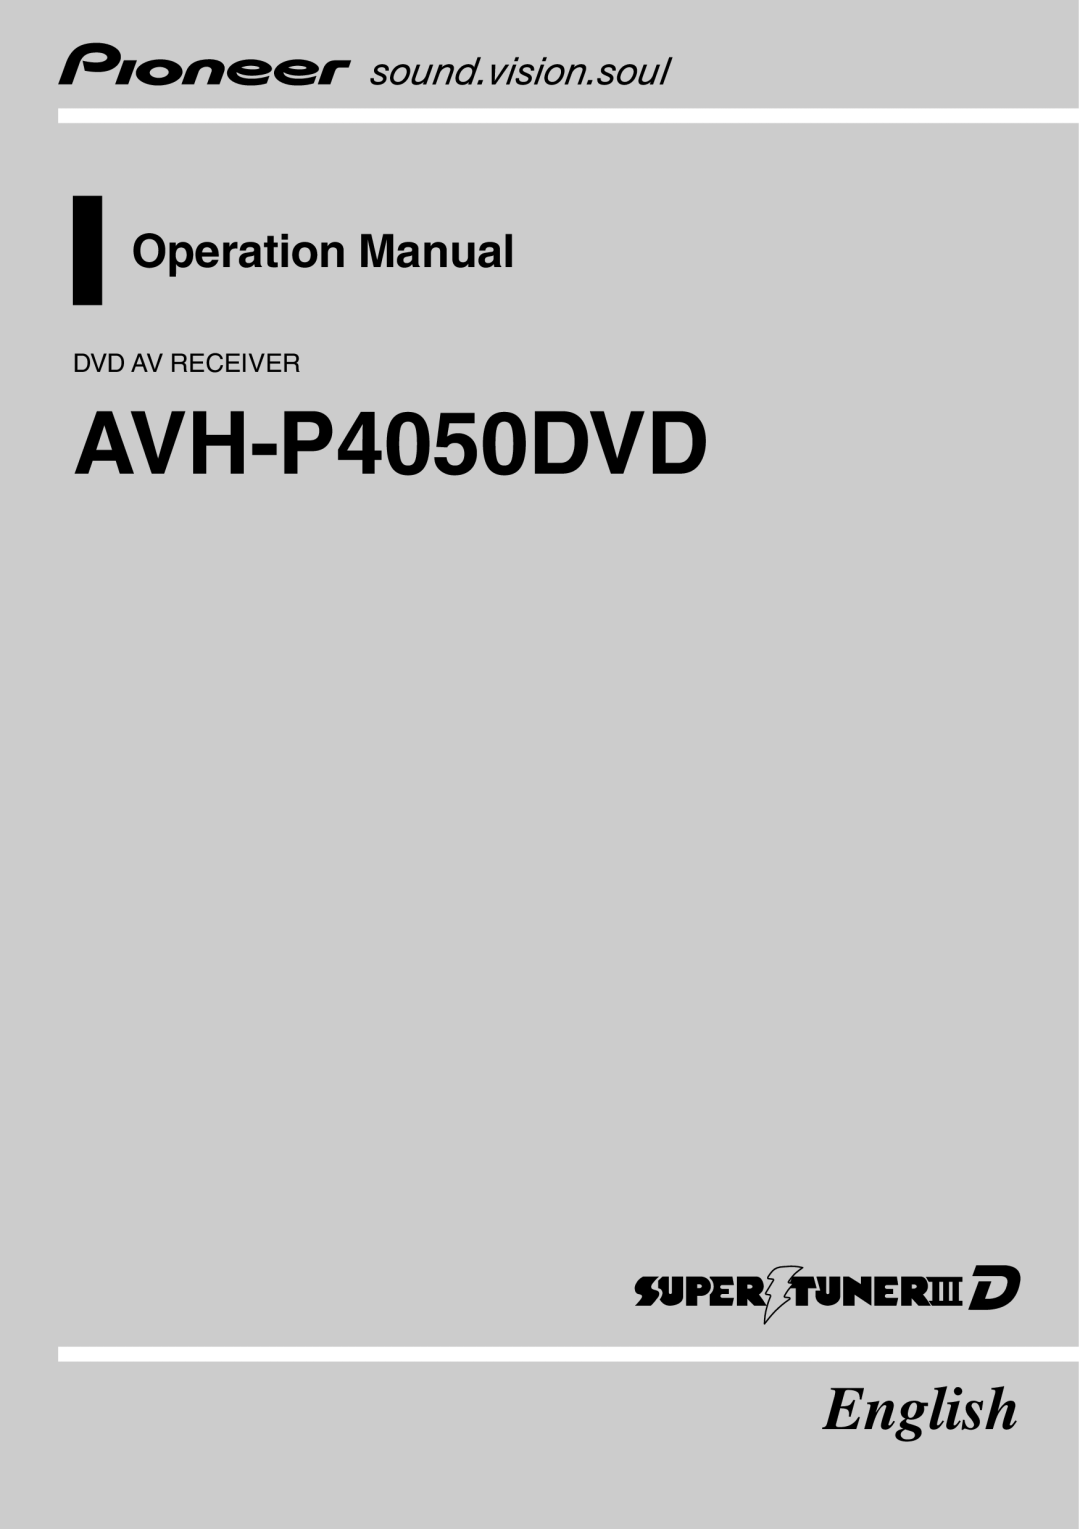 Pioneer AVH-P4050DVD operation manual Dvd Av Receiver, English, Operation Manual 